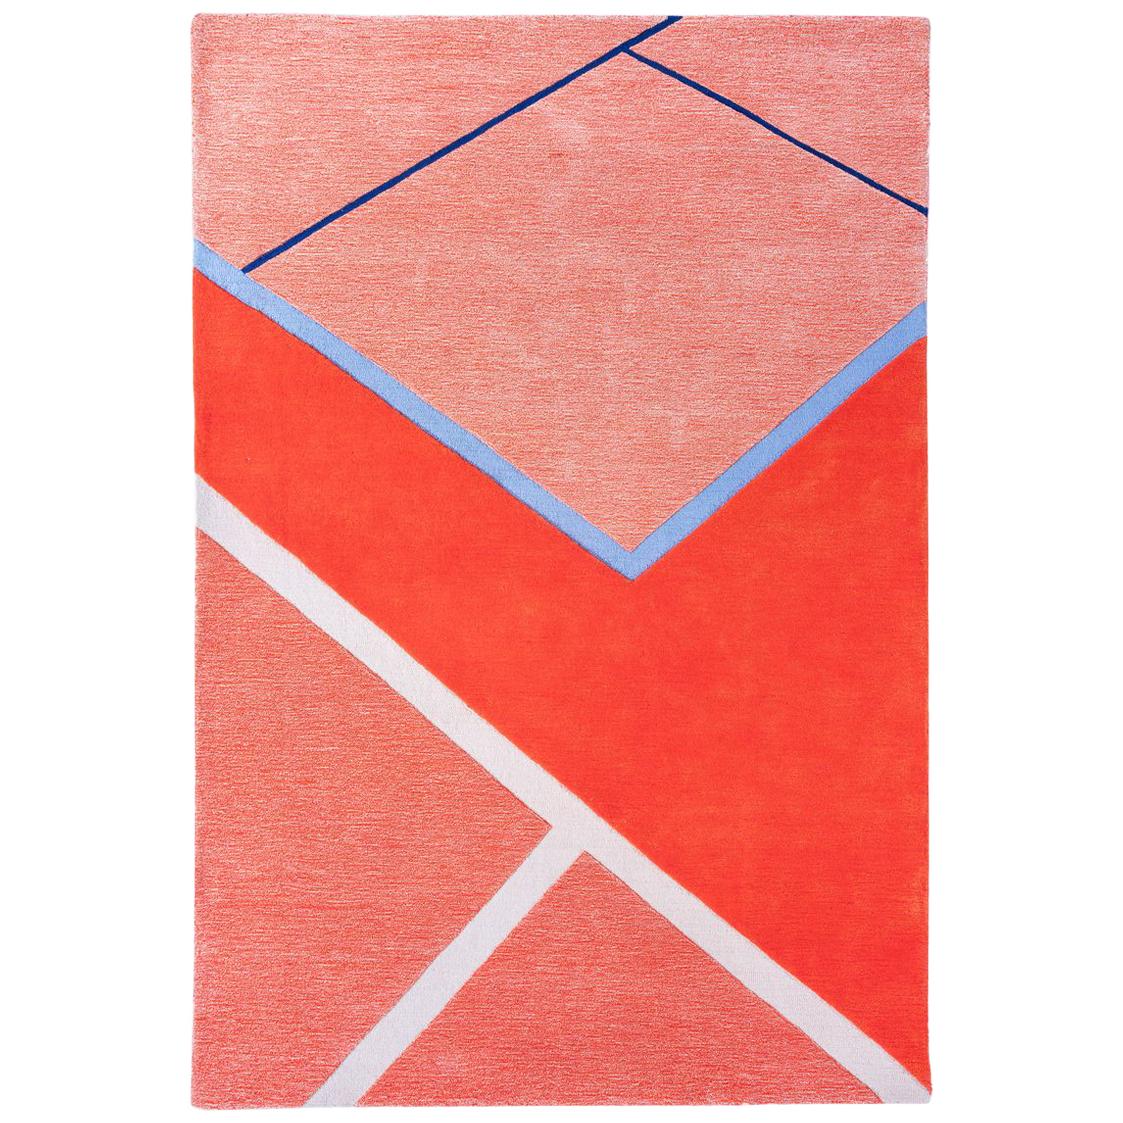 Tapis de maison « Court Series » de Pieces, tapis rouge coloré moderne touffeté à la main